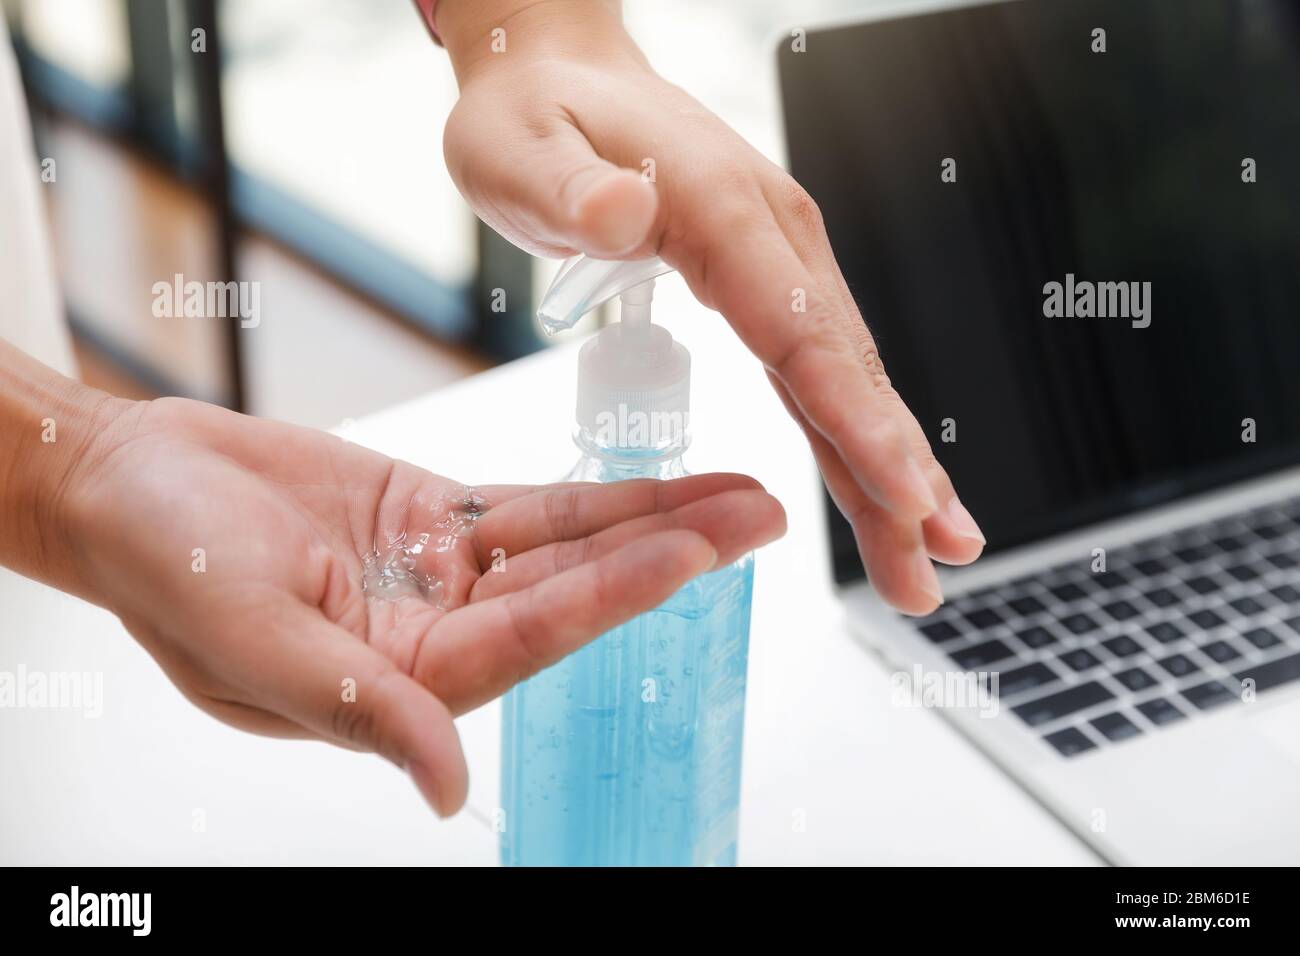 Ein Mann, der vor der Arbeit Desinfektionsmittel auf Alkoholbasis zum Reinigen der Hände verwendet. Anti-Bakterien und schützen vor Coronavirus Disease 2019 (COVID-19) Virus o Stockfoto